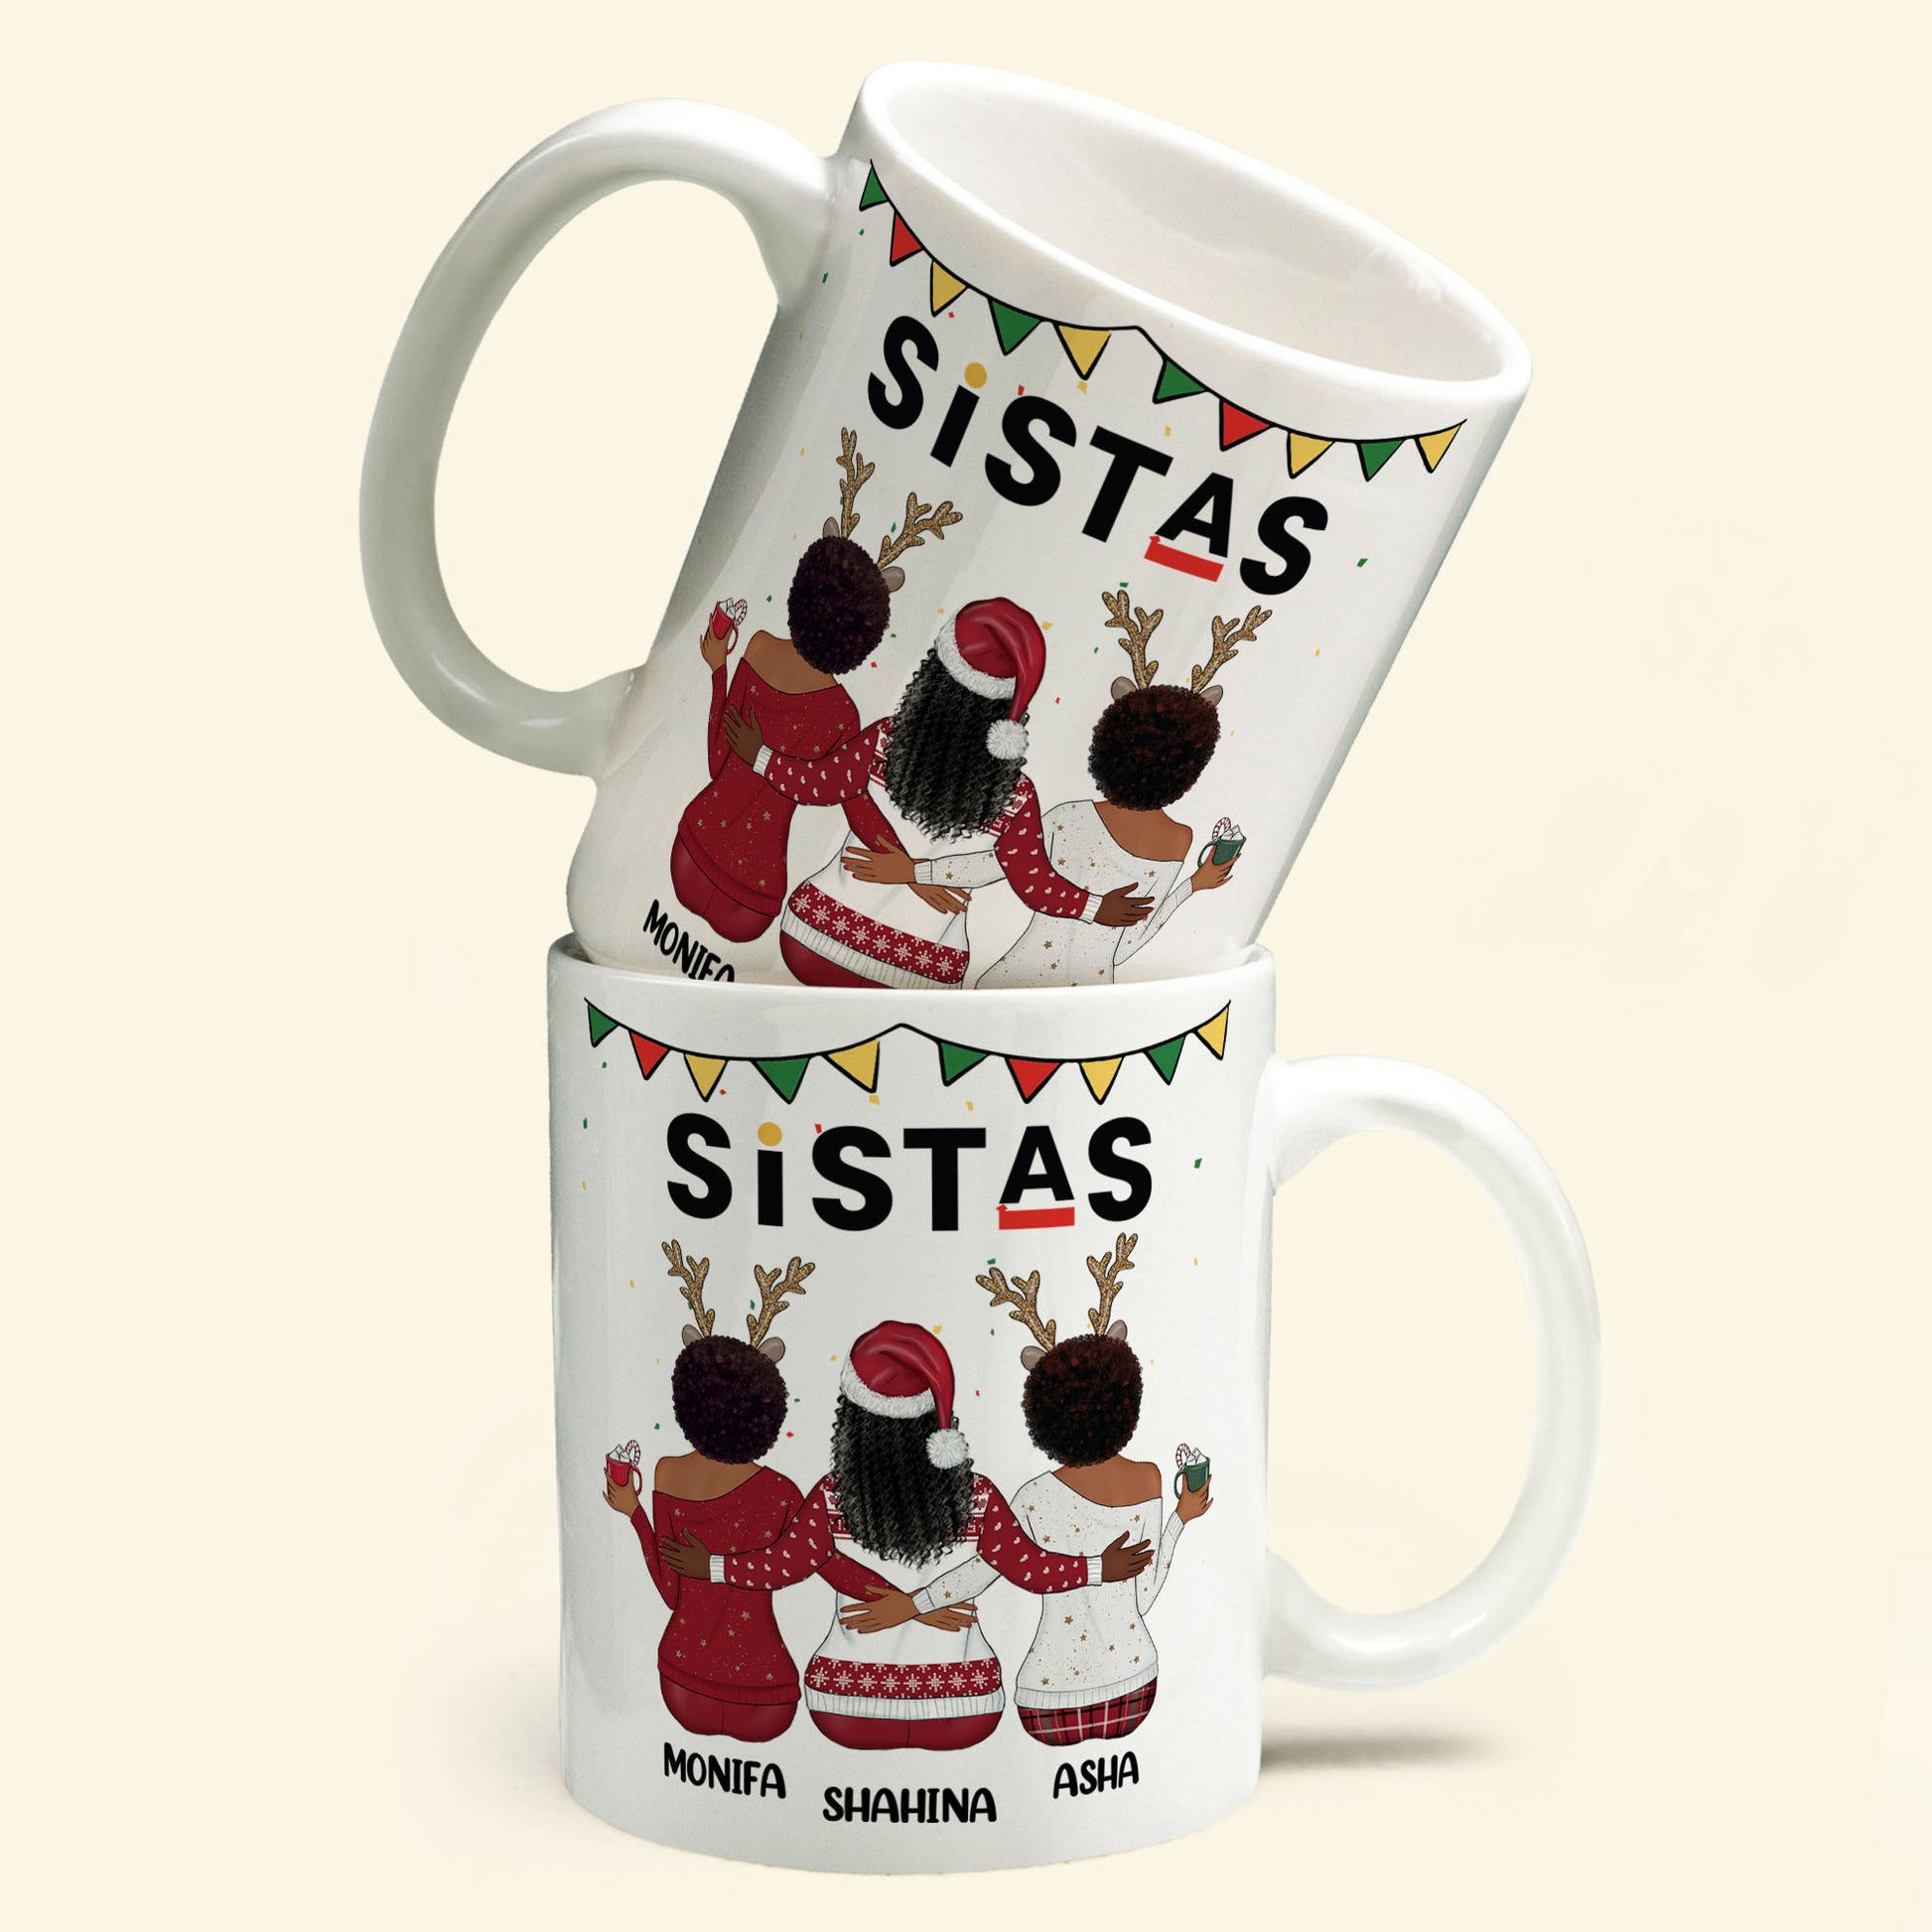 Sistas Soul Sisters - Personalized Mug - Christmas Gift For Sister